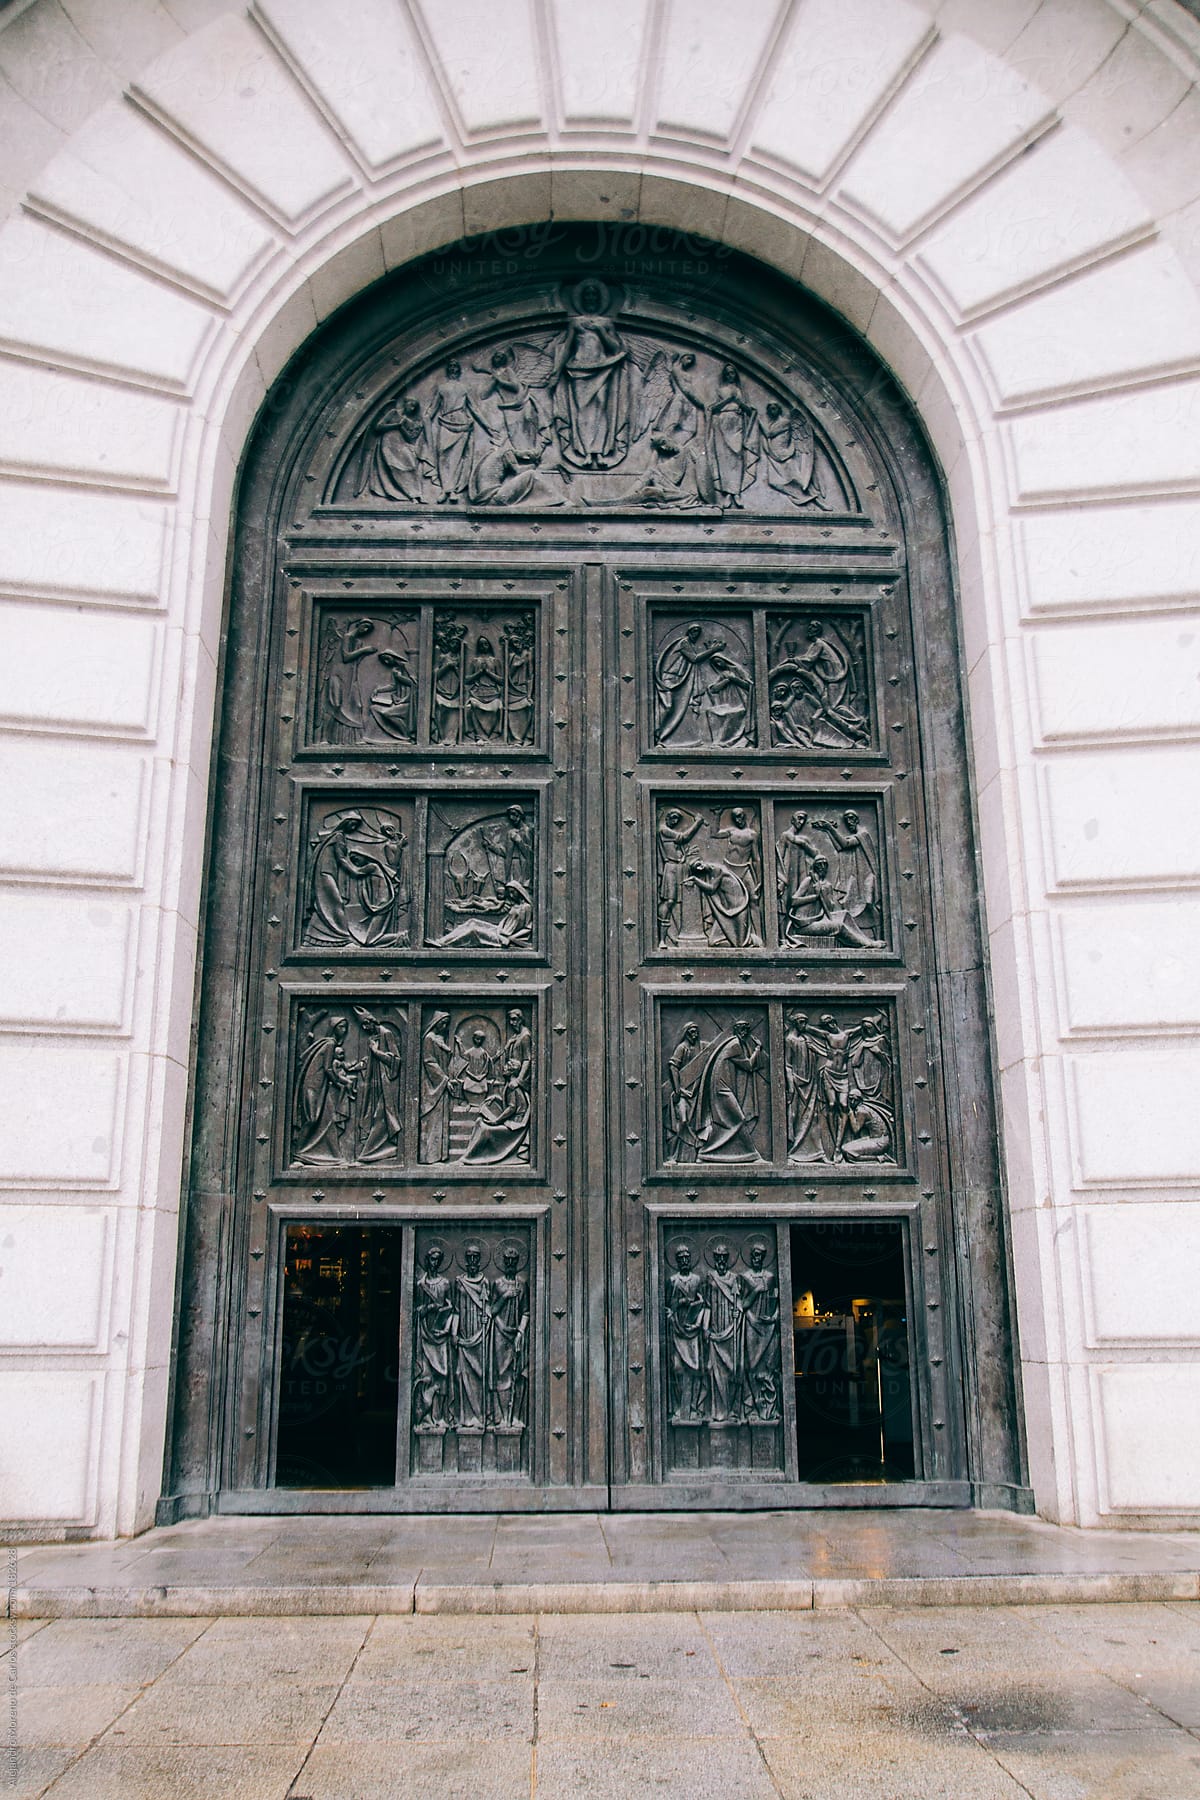 Big door with metal relief sculptures